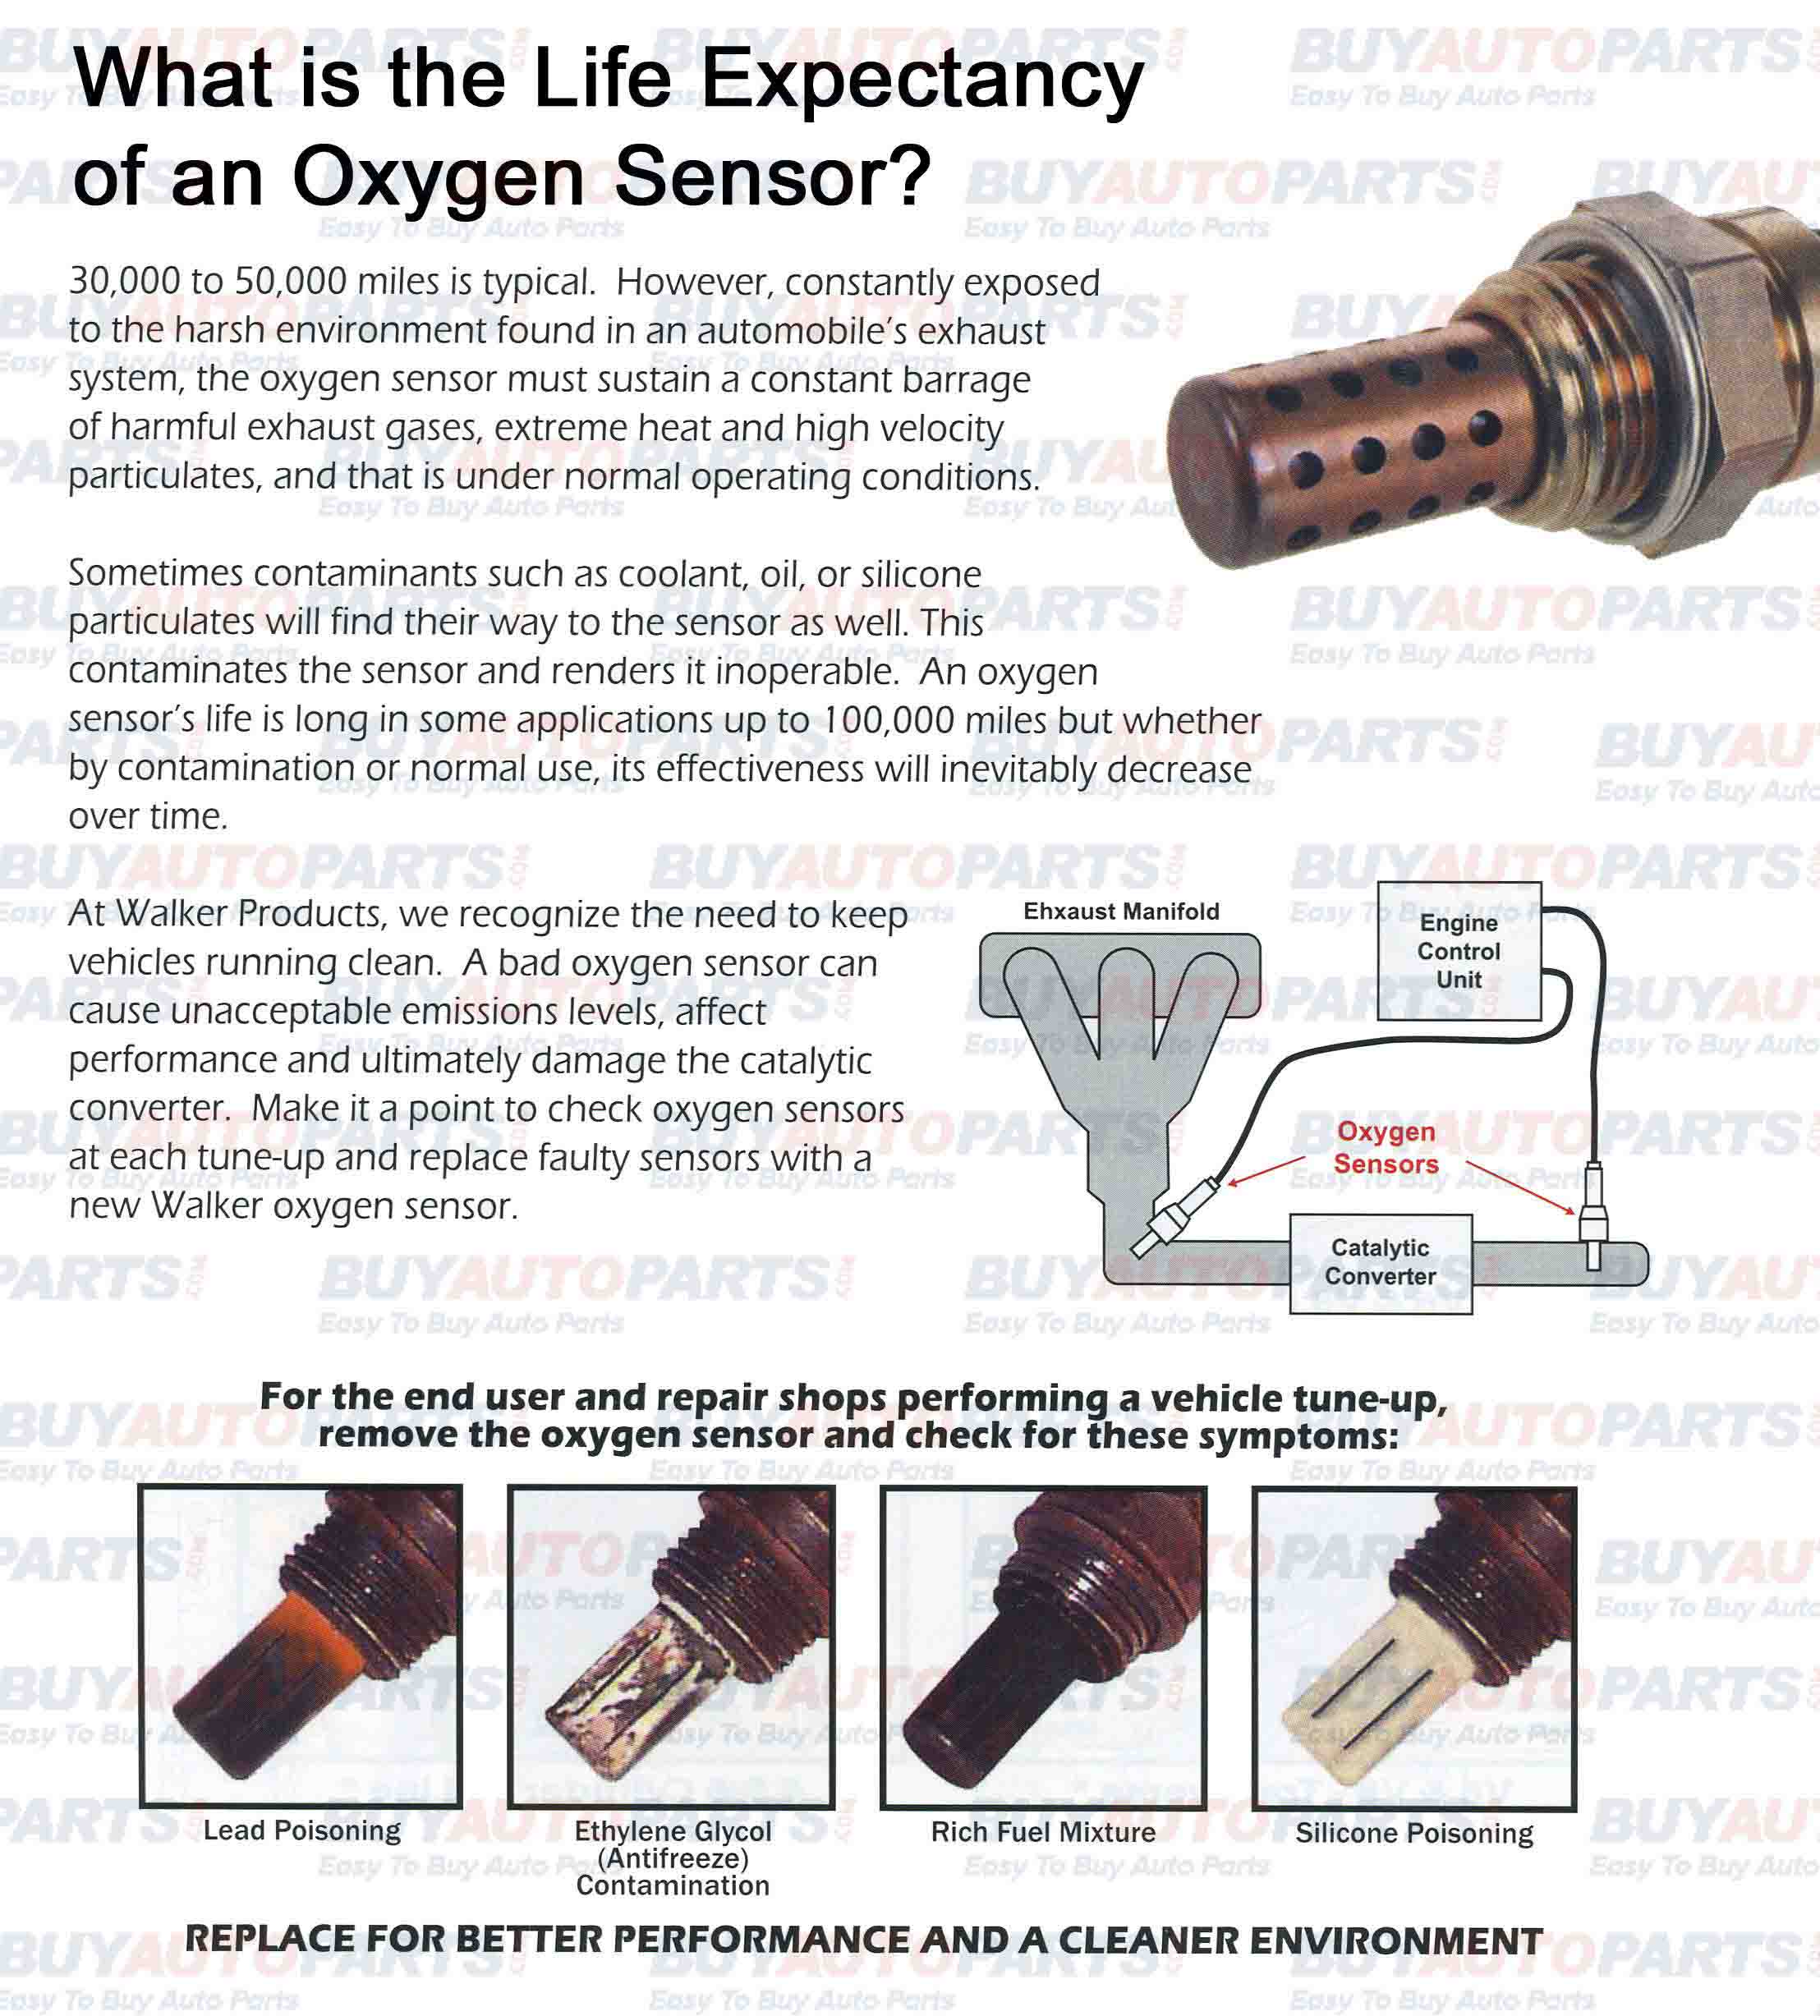 Symptoms of a Bad or Failing Oxygen Sensor